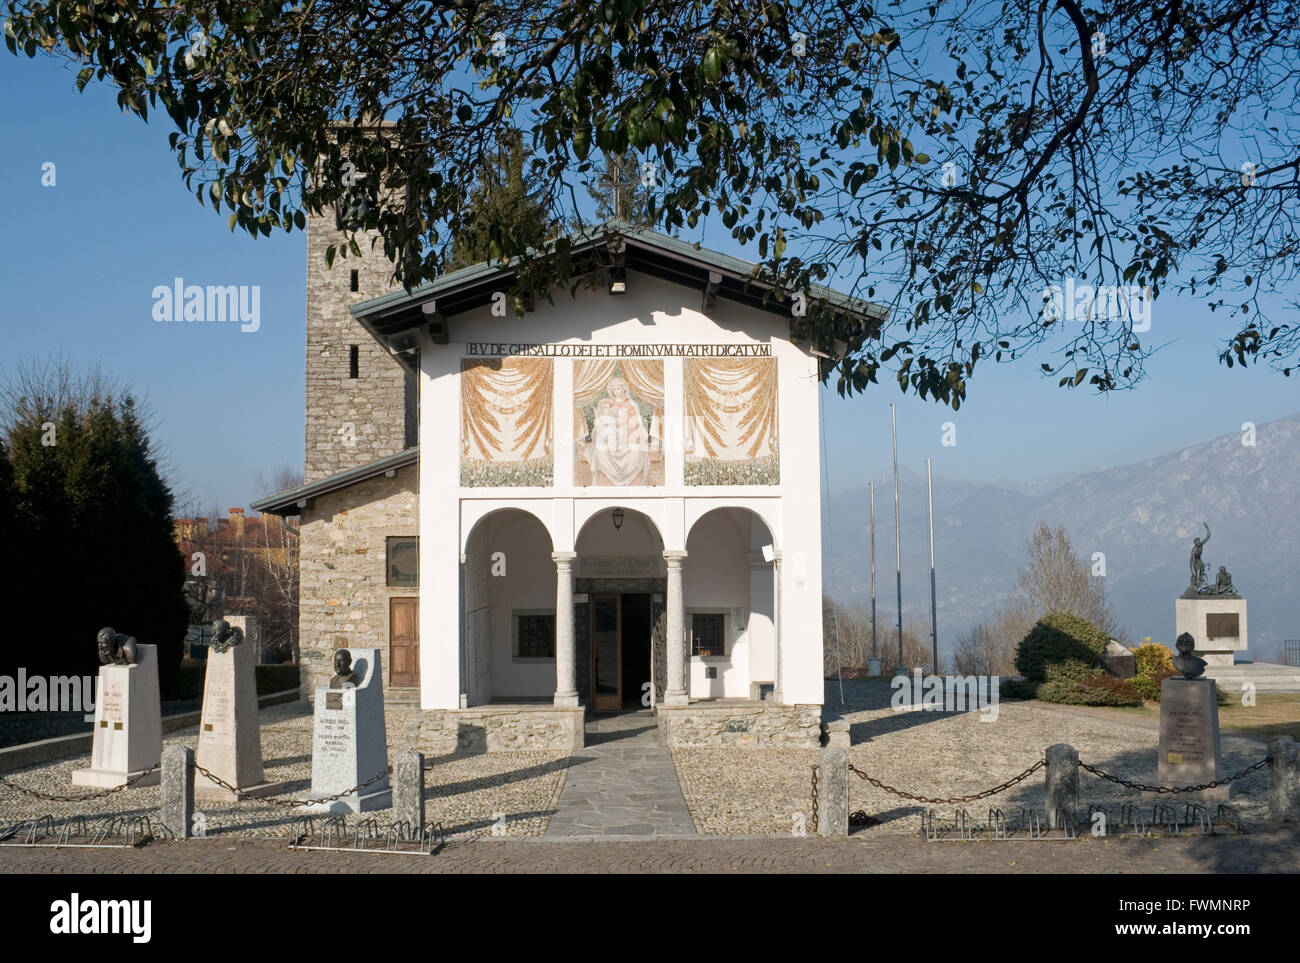 Madonna del Ghisallo sanctuary, Magreglio, Como province, Lombardy Italy Stock Photo